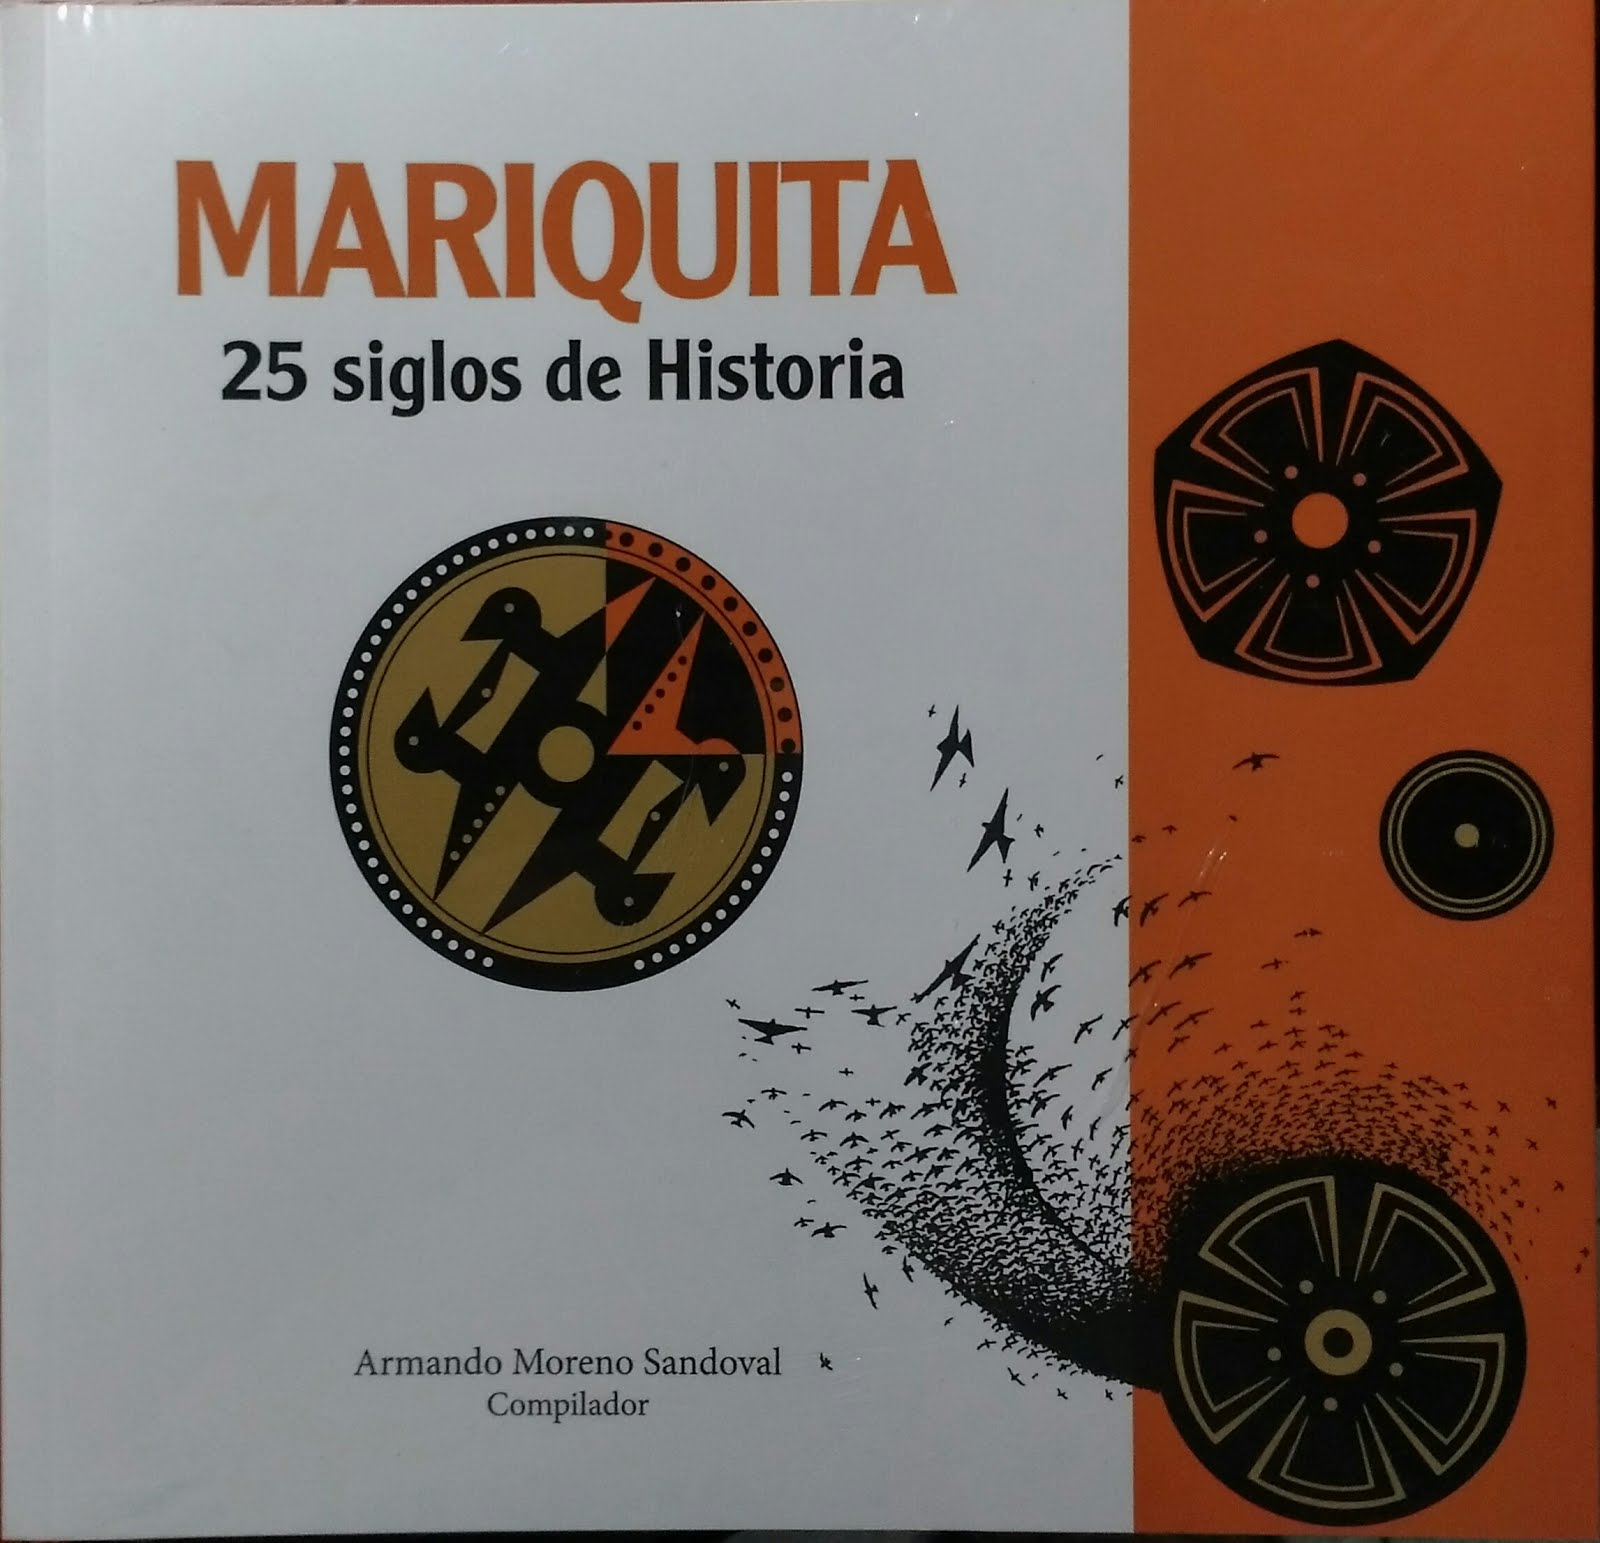 Mariquita: 25 siglos de Historia